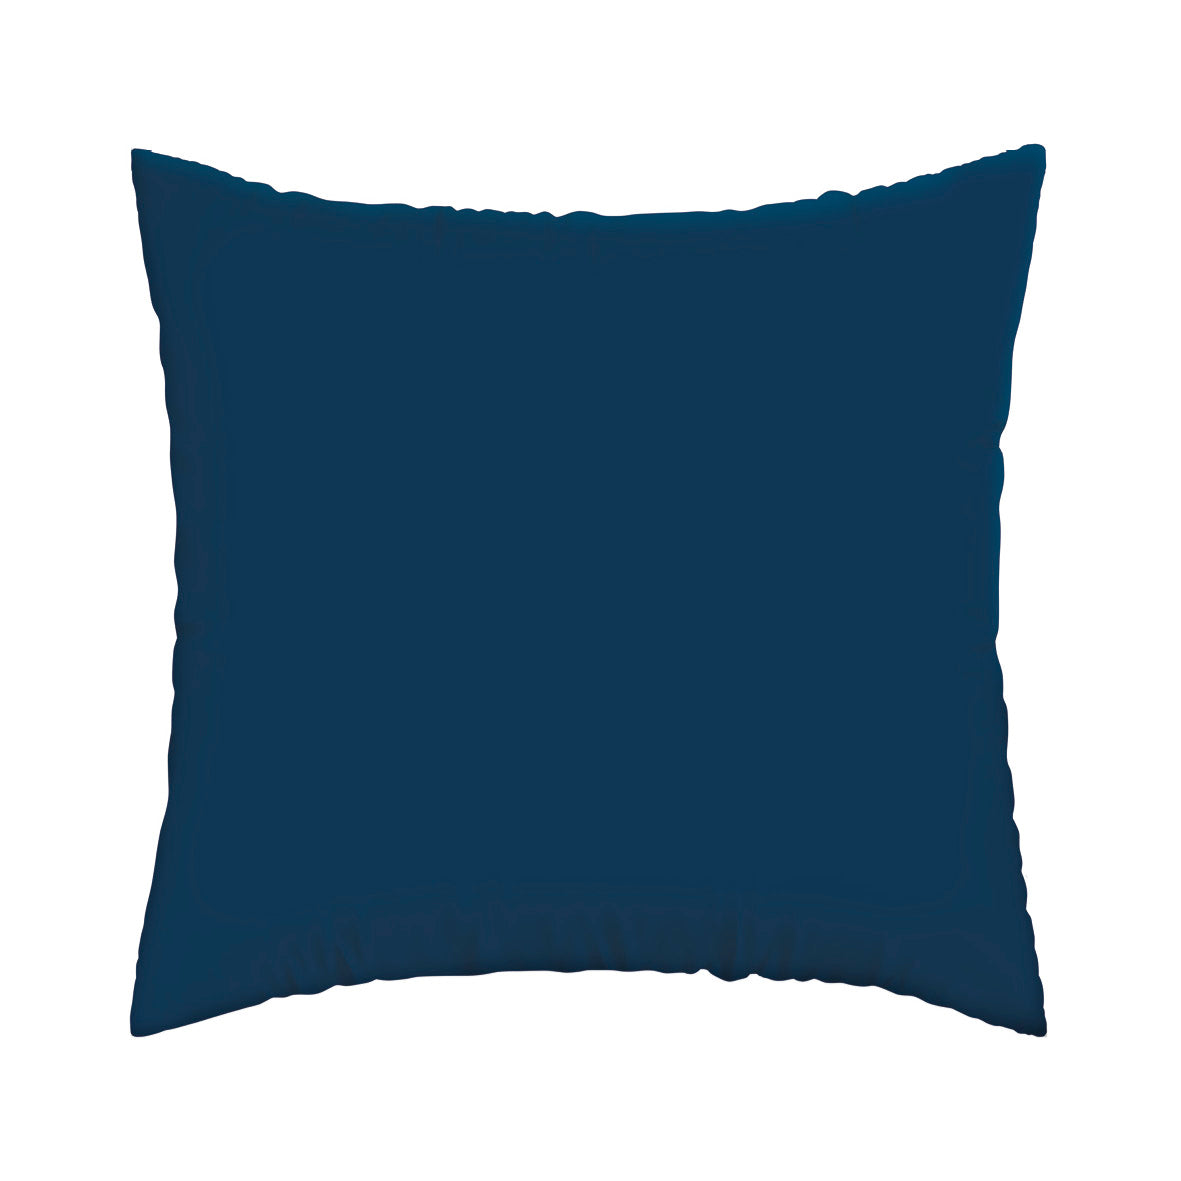 Taie(s) d'oreiller satin de coton - A l'infini bleu foncé